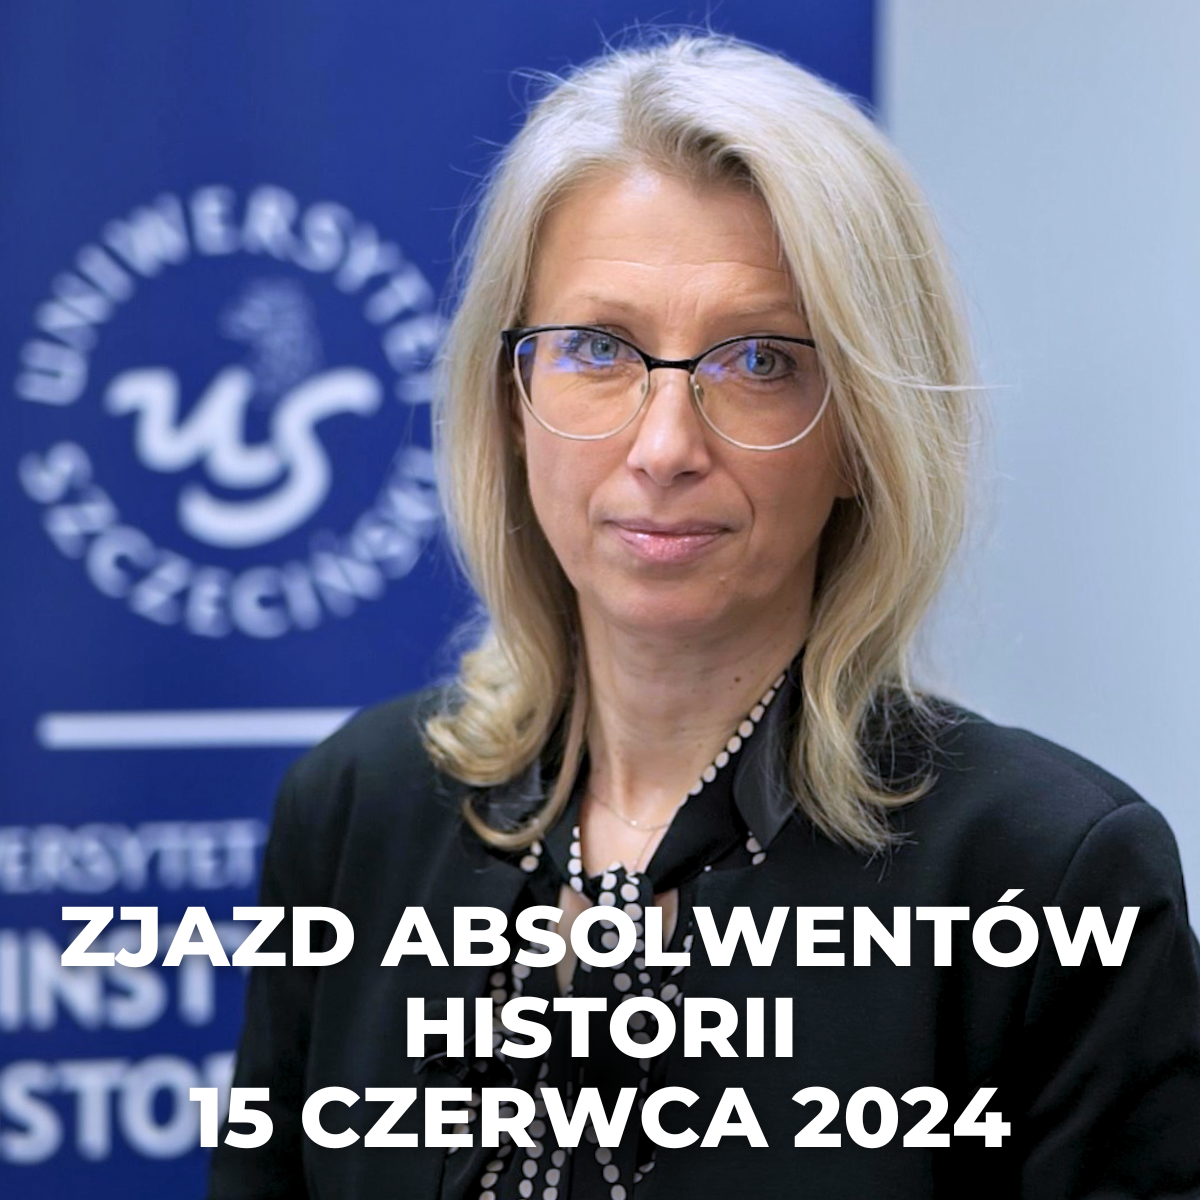 Zjazd Absolwentów Historii –  Szczecin, 15 czerwca 2024 r.